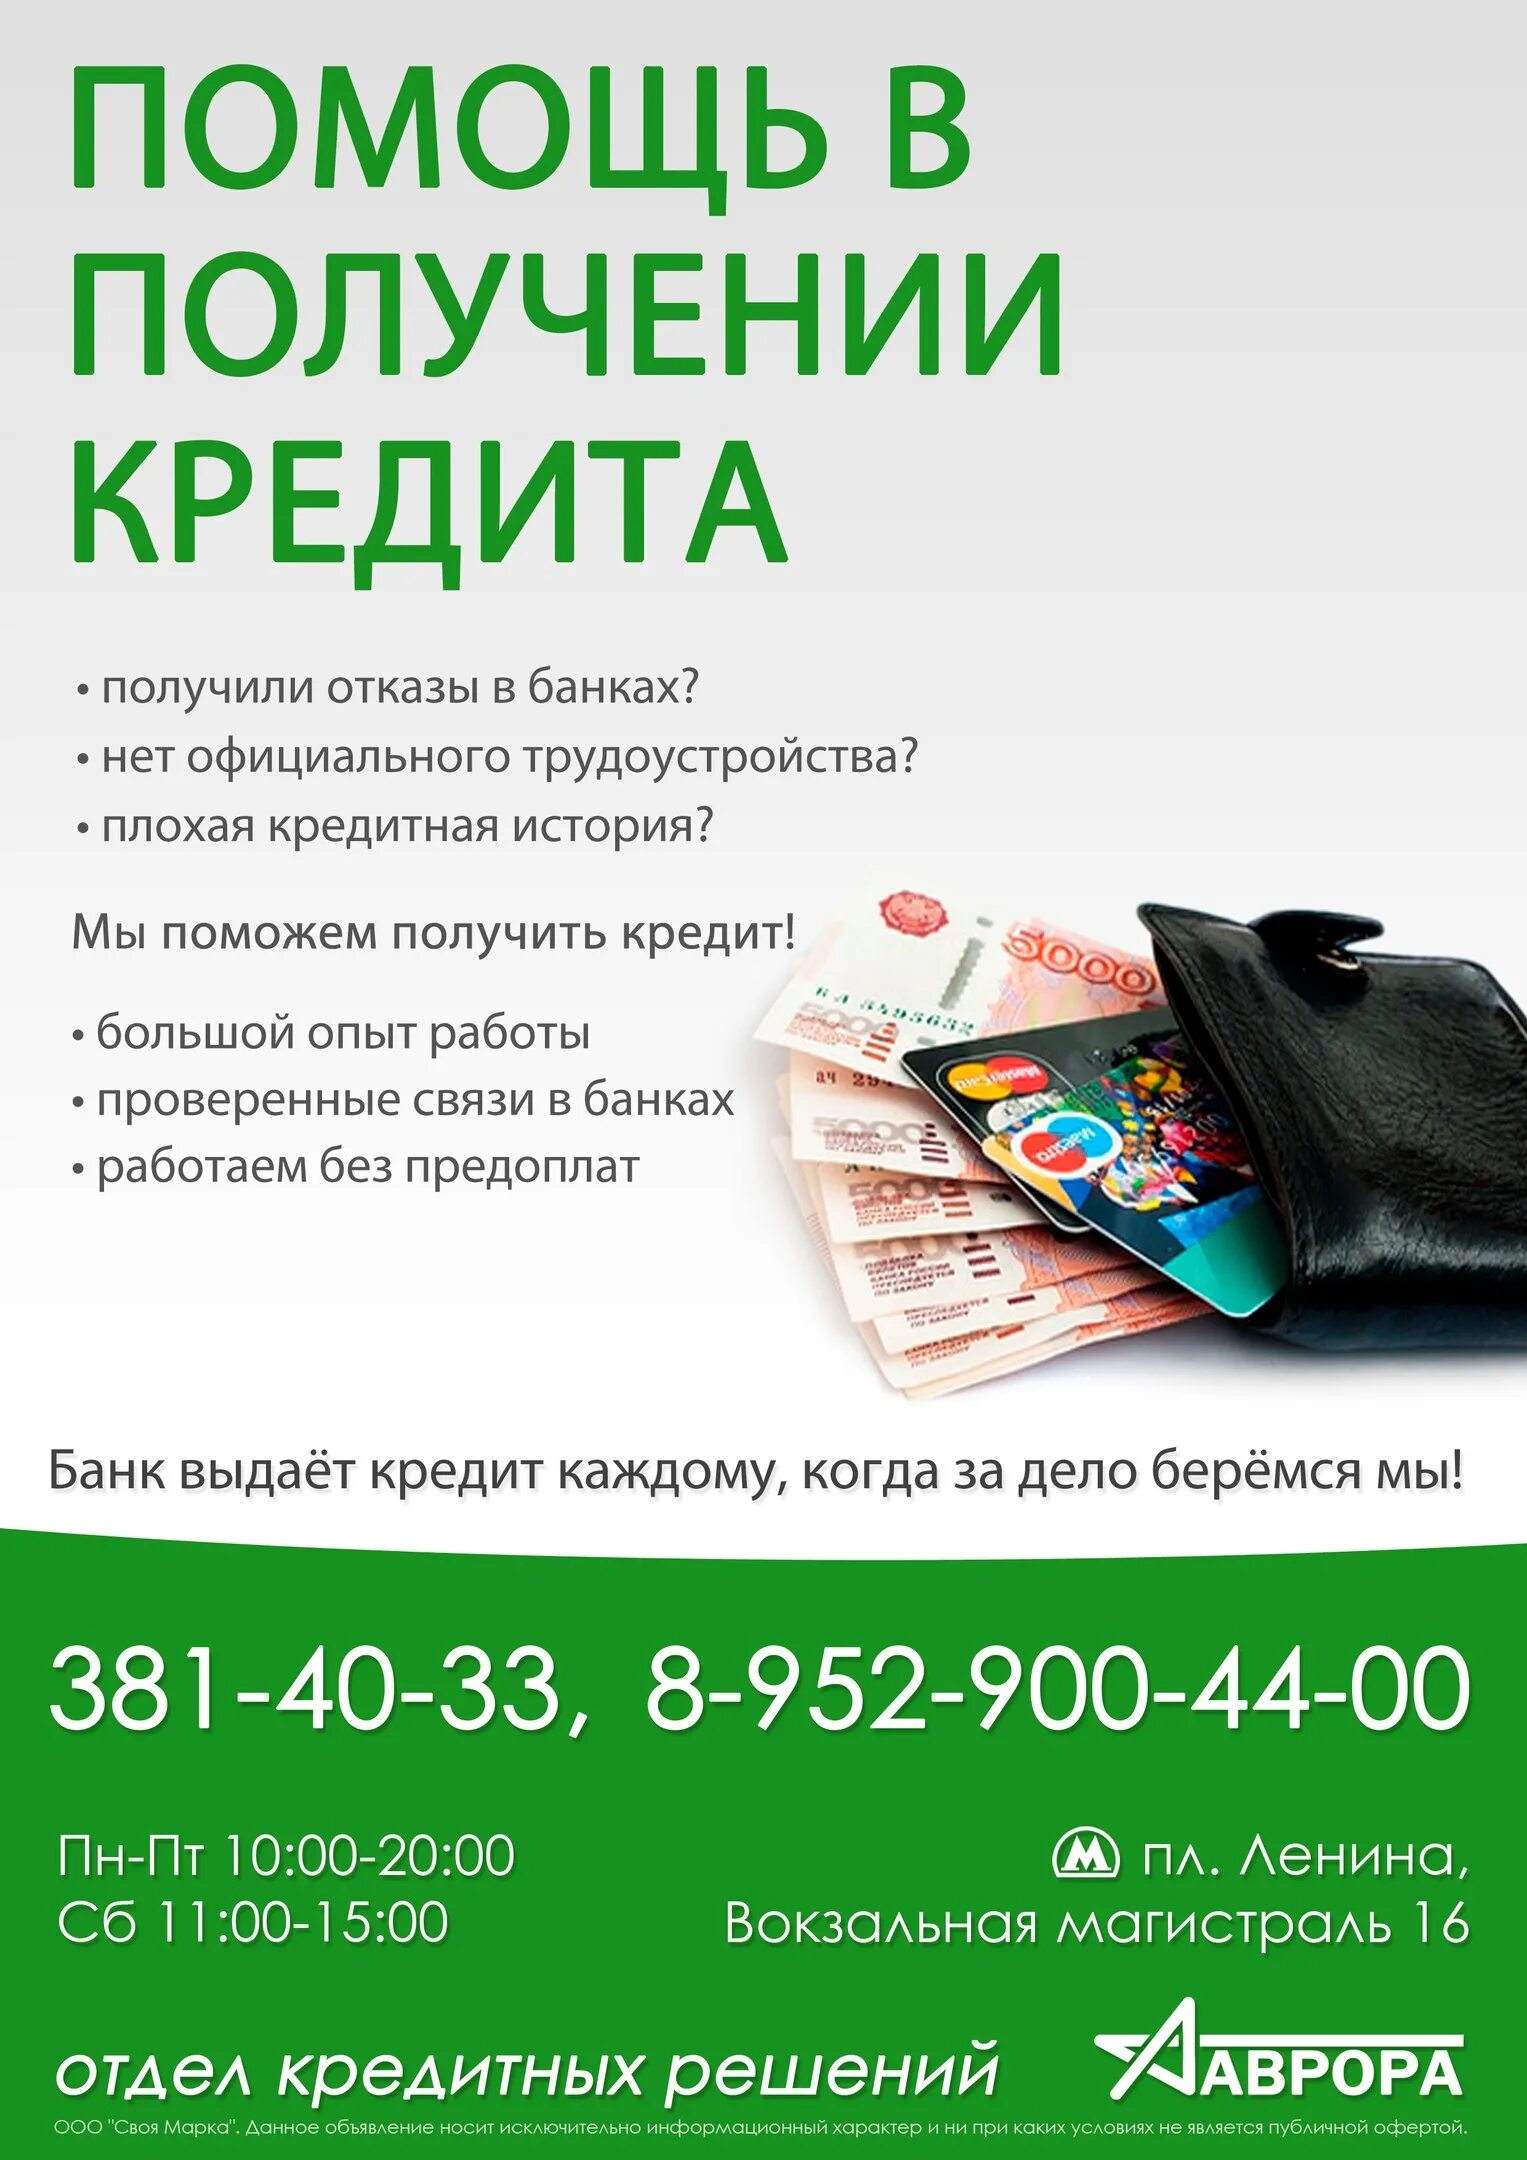 Новосибирск б кредит. Помощь в получении кредита. Помогу с кредитом с плохой кредитной историей. Помогите взять кредит с плохой кредитной историей. Помогу получить кредит.